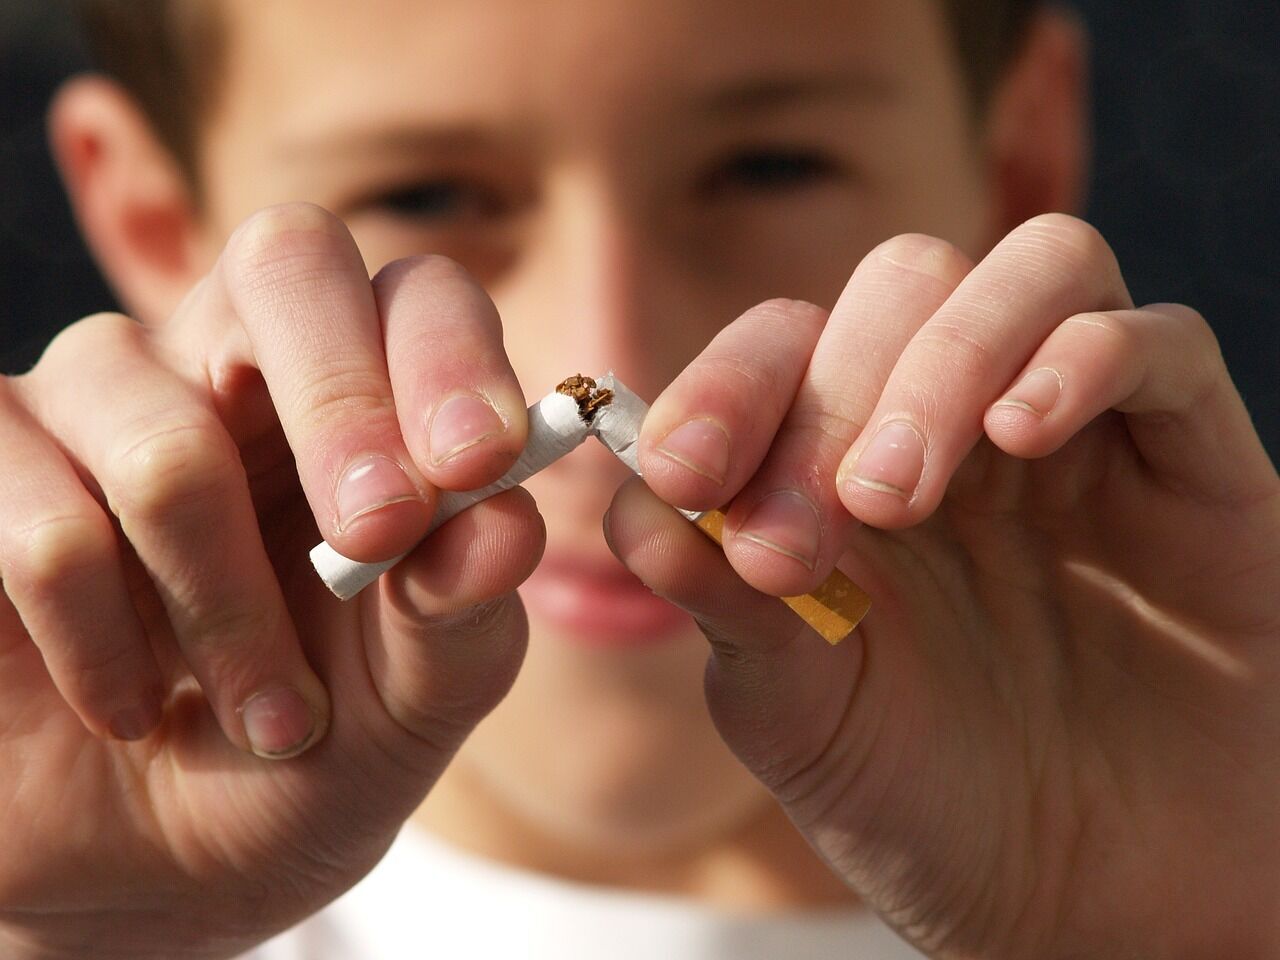 Контакт с курильщиками в семье способствует развитию тяги к курение у подростков